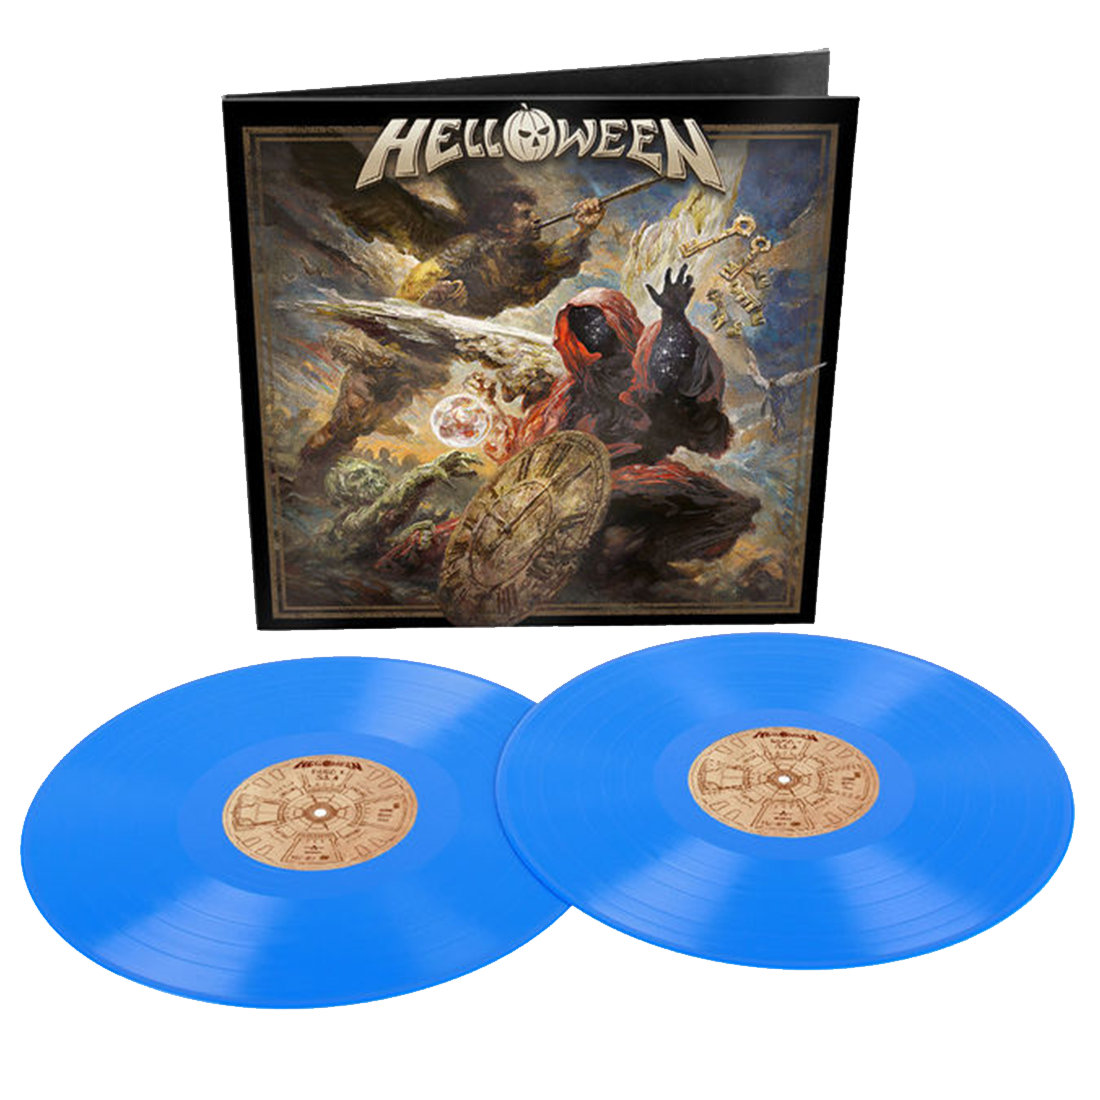 Helloween - Helloween: Exclusive Blue Vinyl 2LP